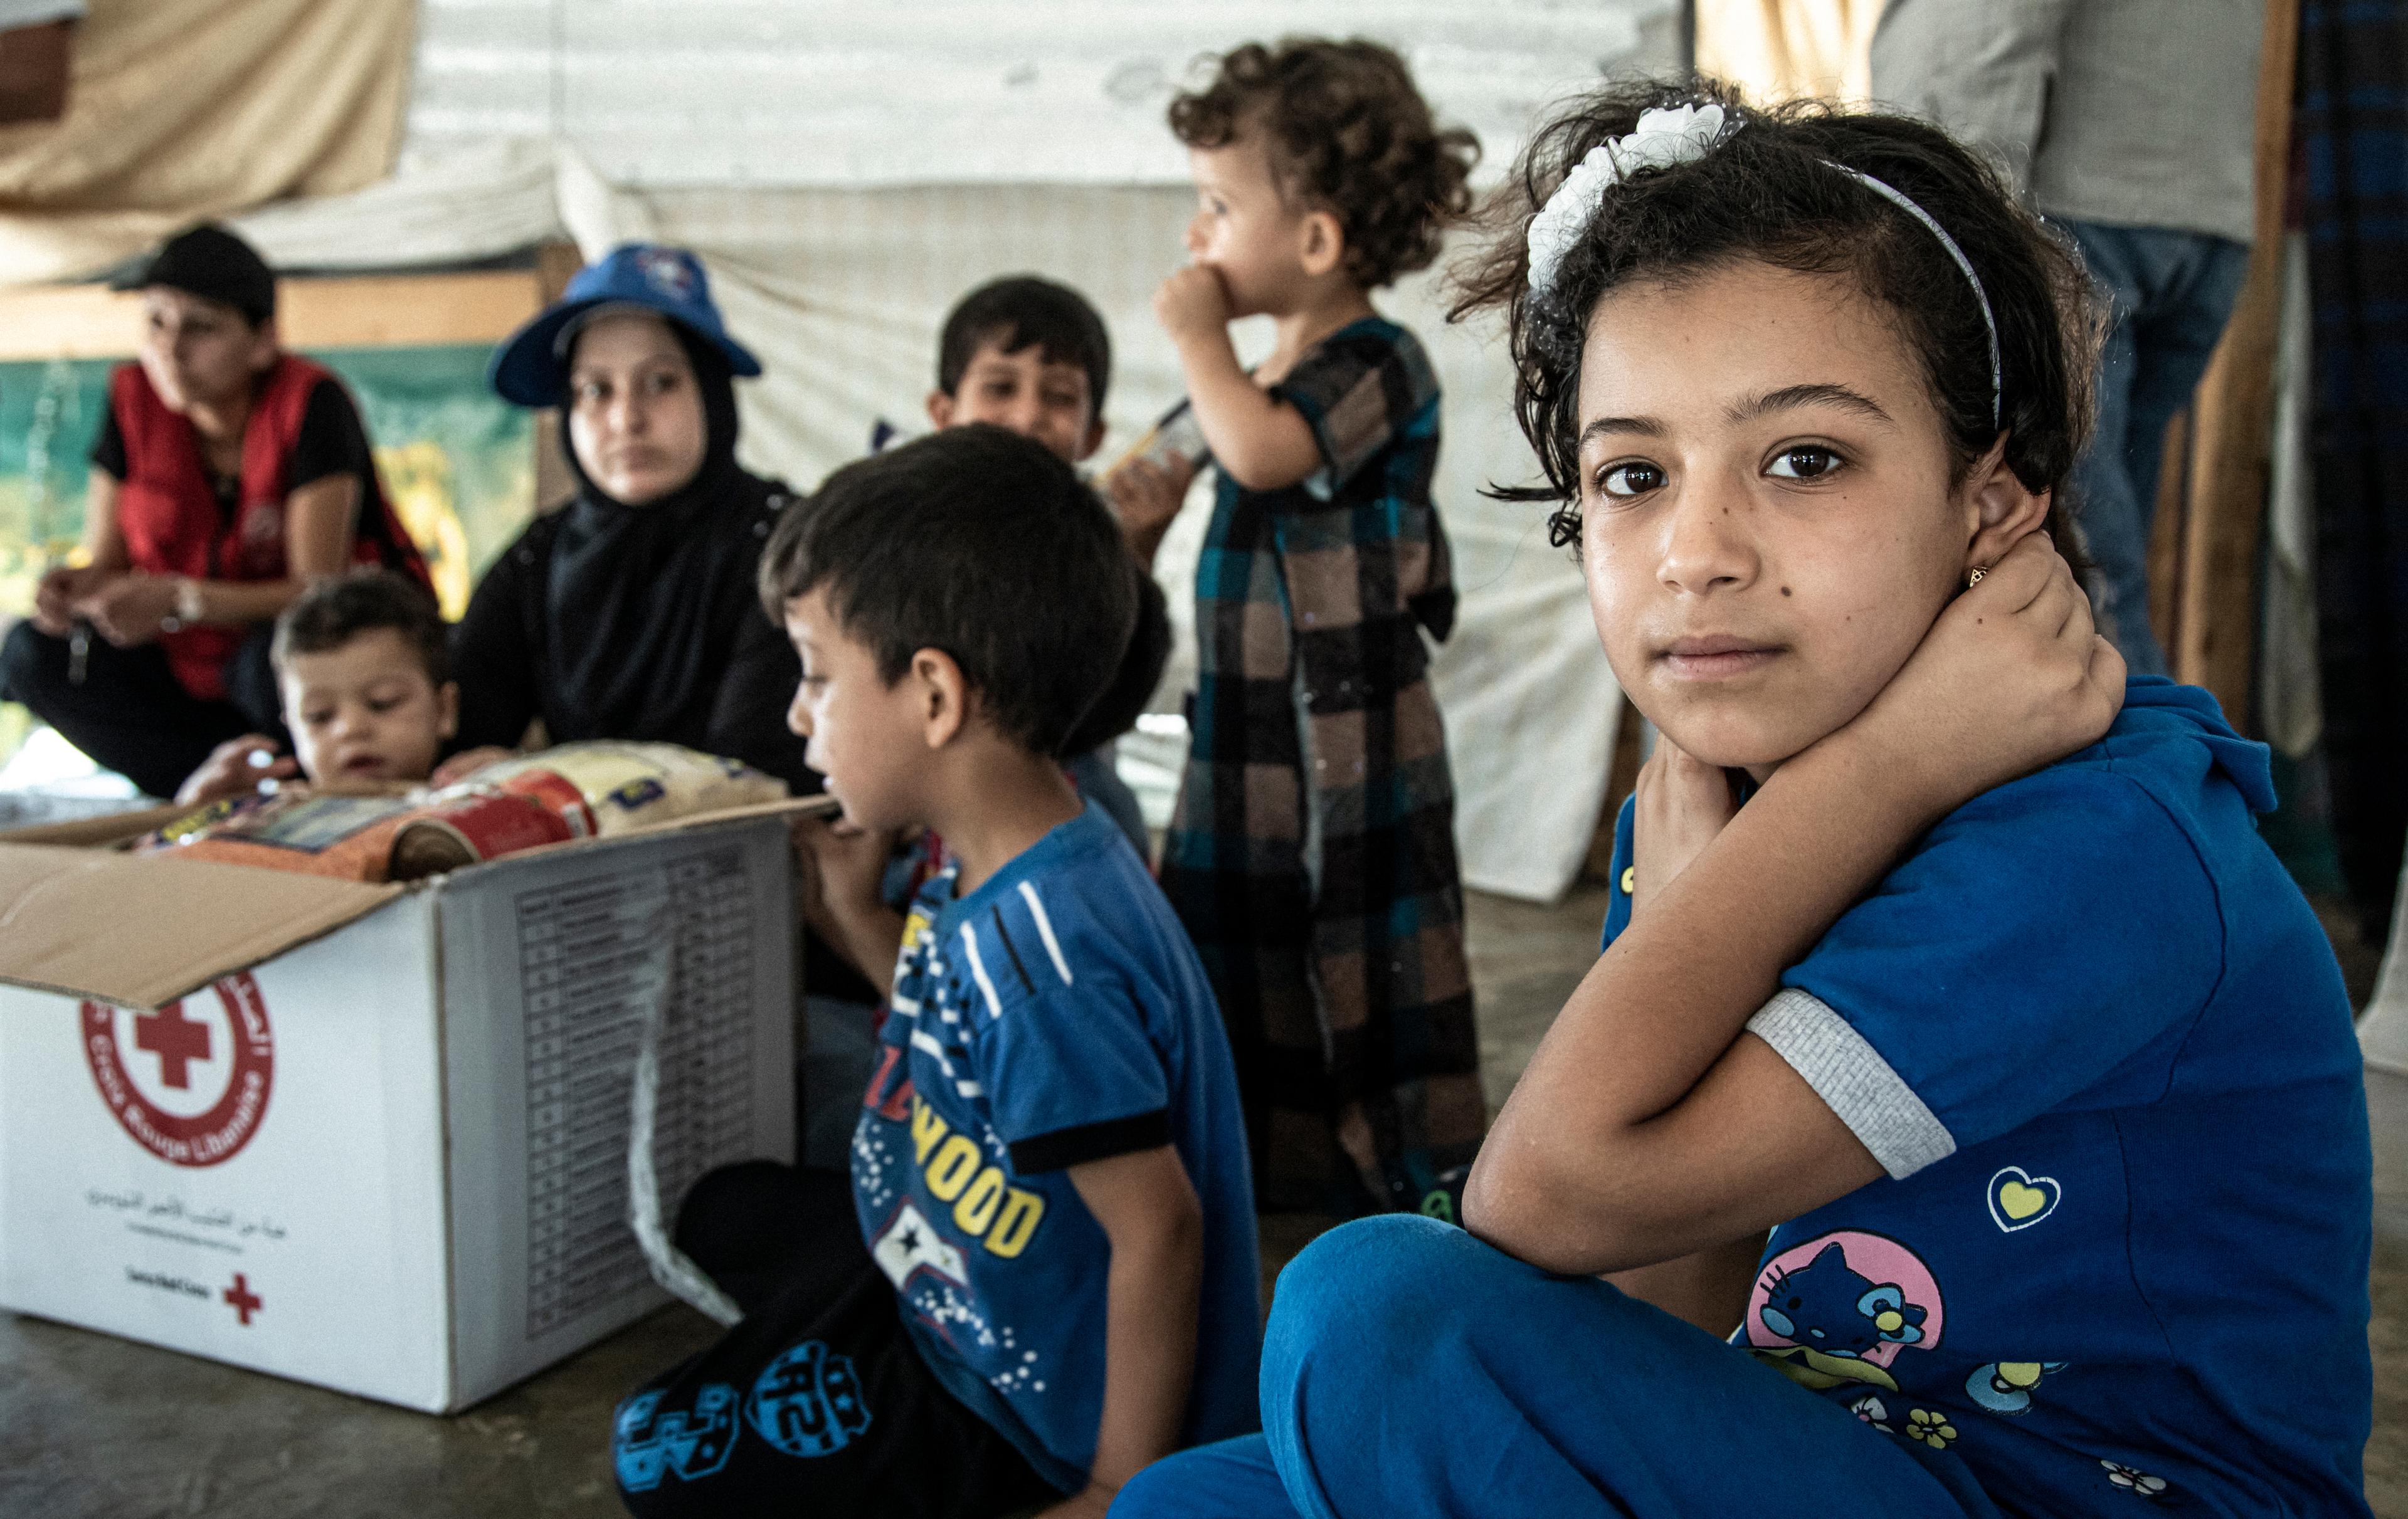 Inass (im Vordergrund) und ihre Familie freuen sich auf das monatliche Lebensmittelpaket des Roten Kreuzes. Flüchtlingslager in der Region Akkar im Norden von Libanon.